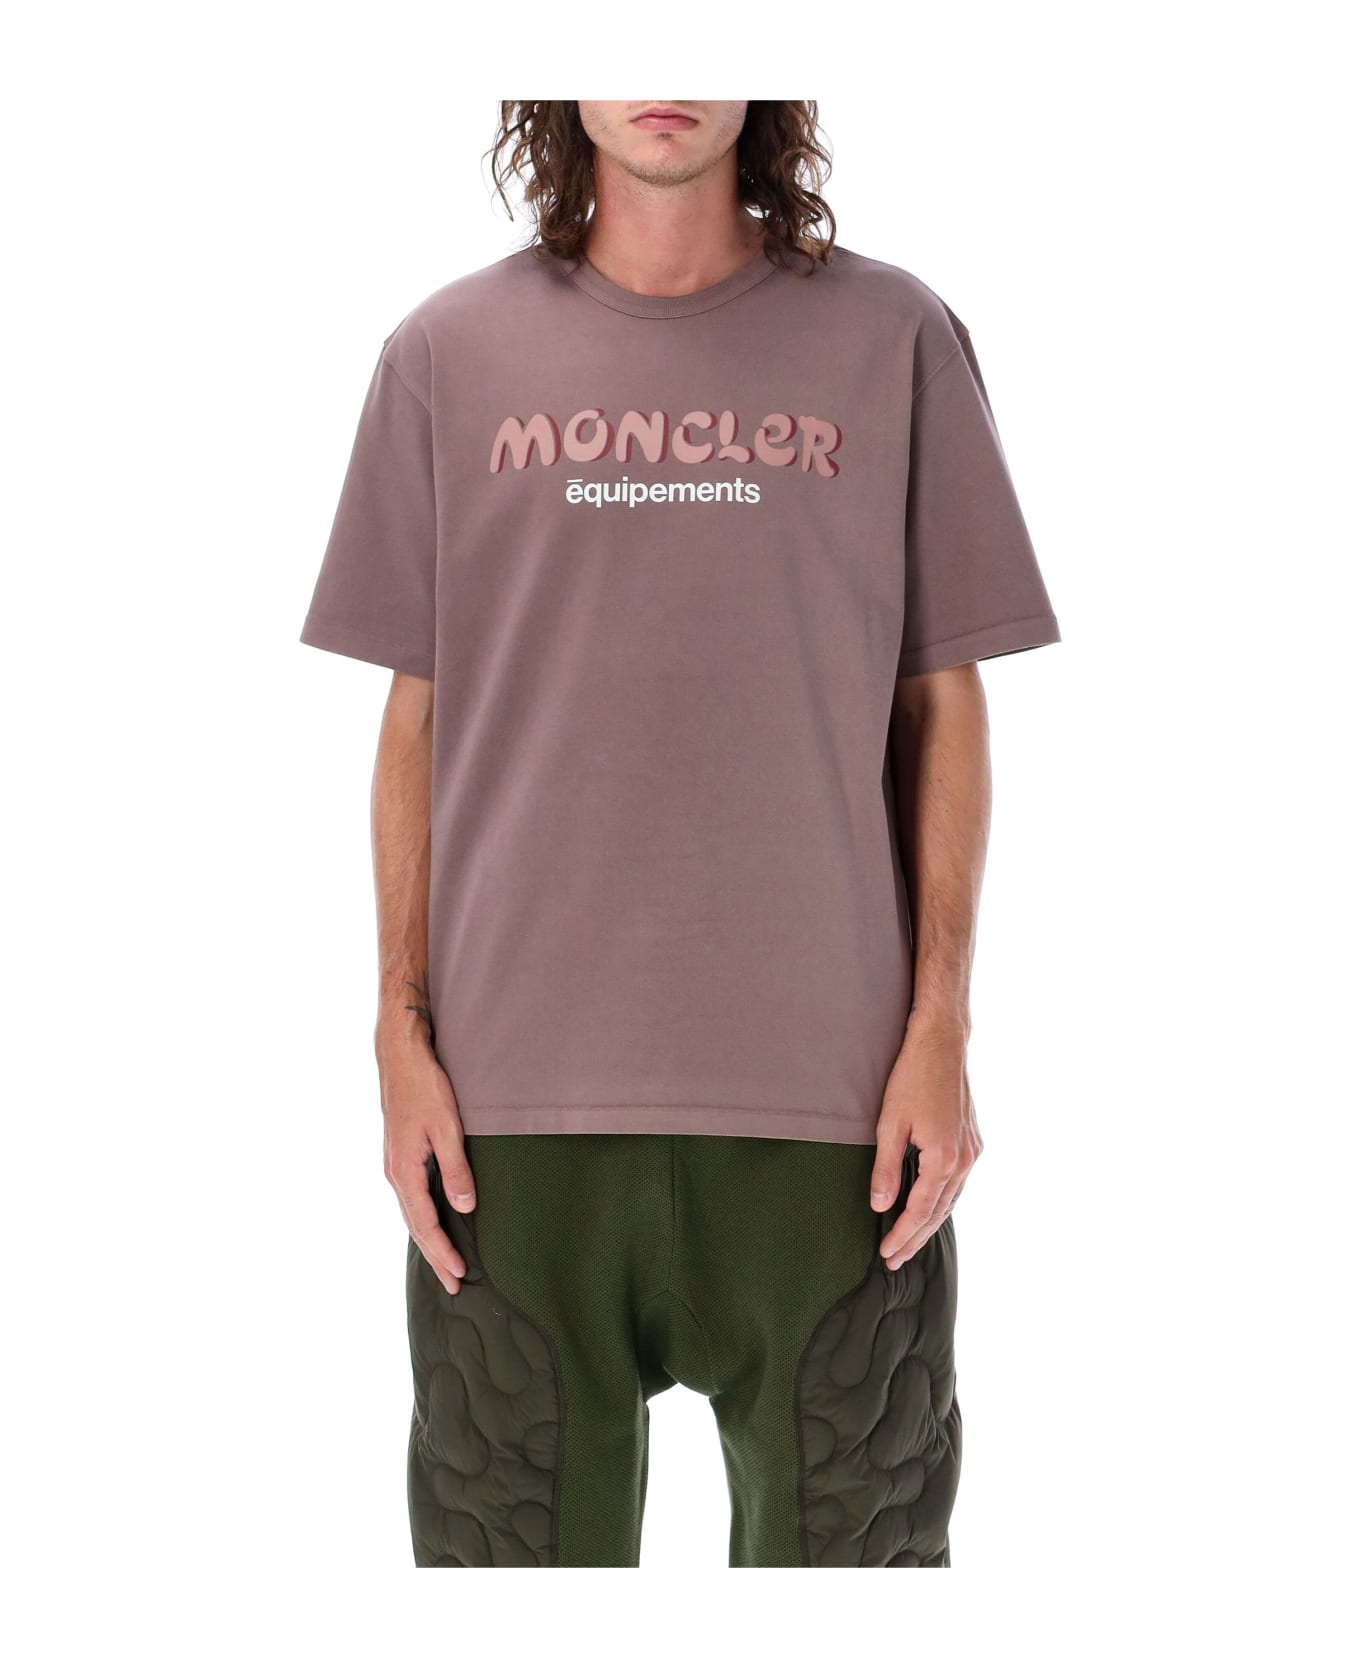 Moncler Genius Logo T-shirt - Pink Tシャツ